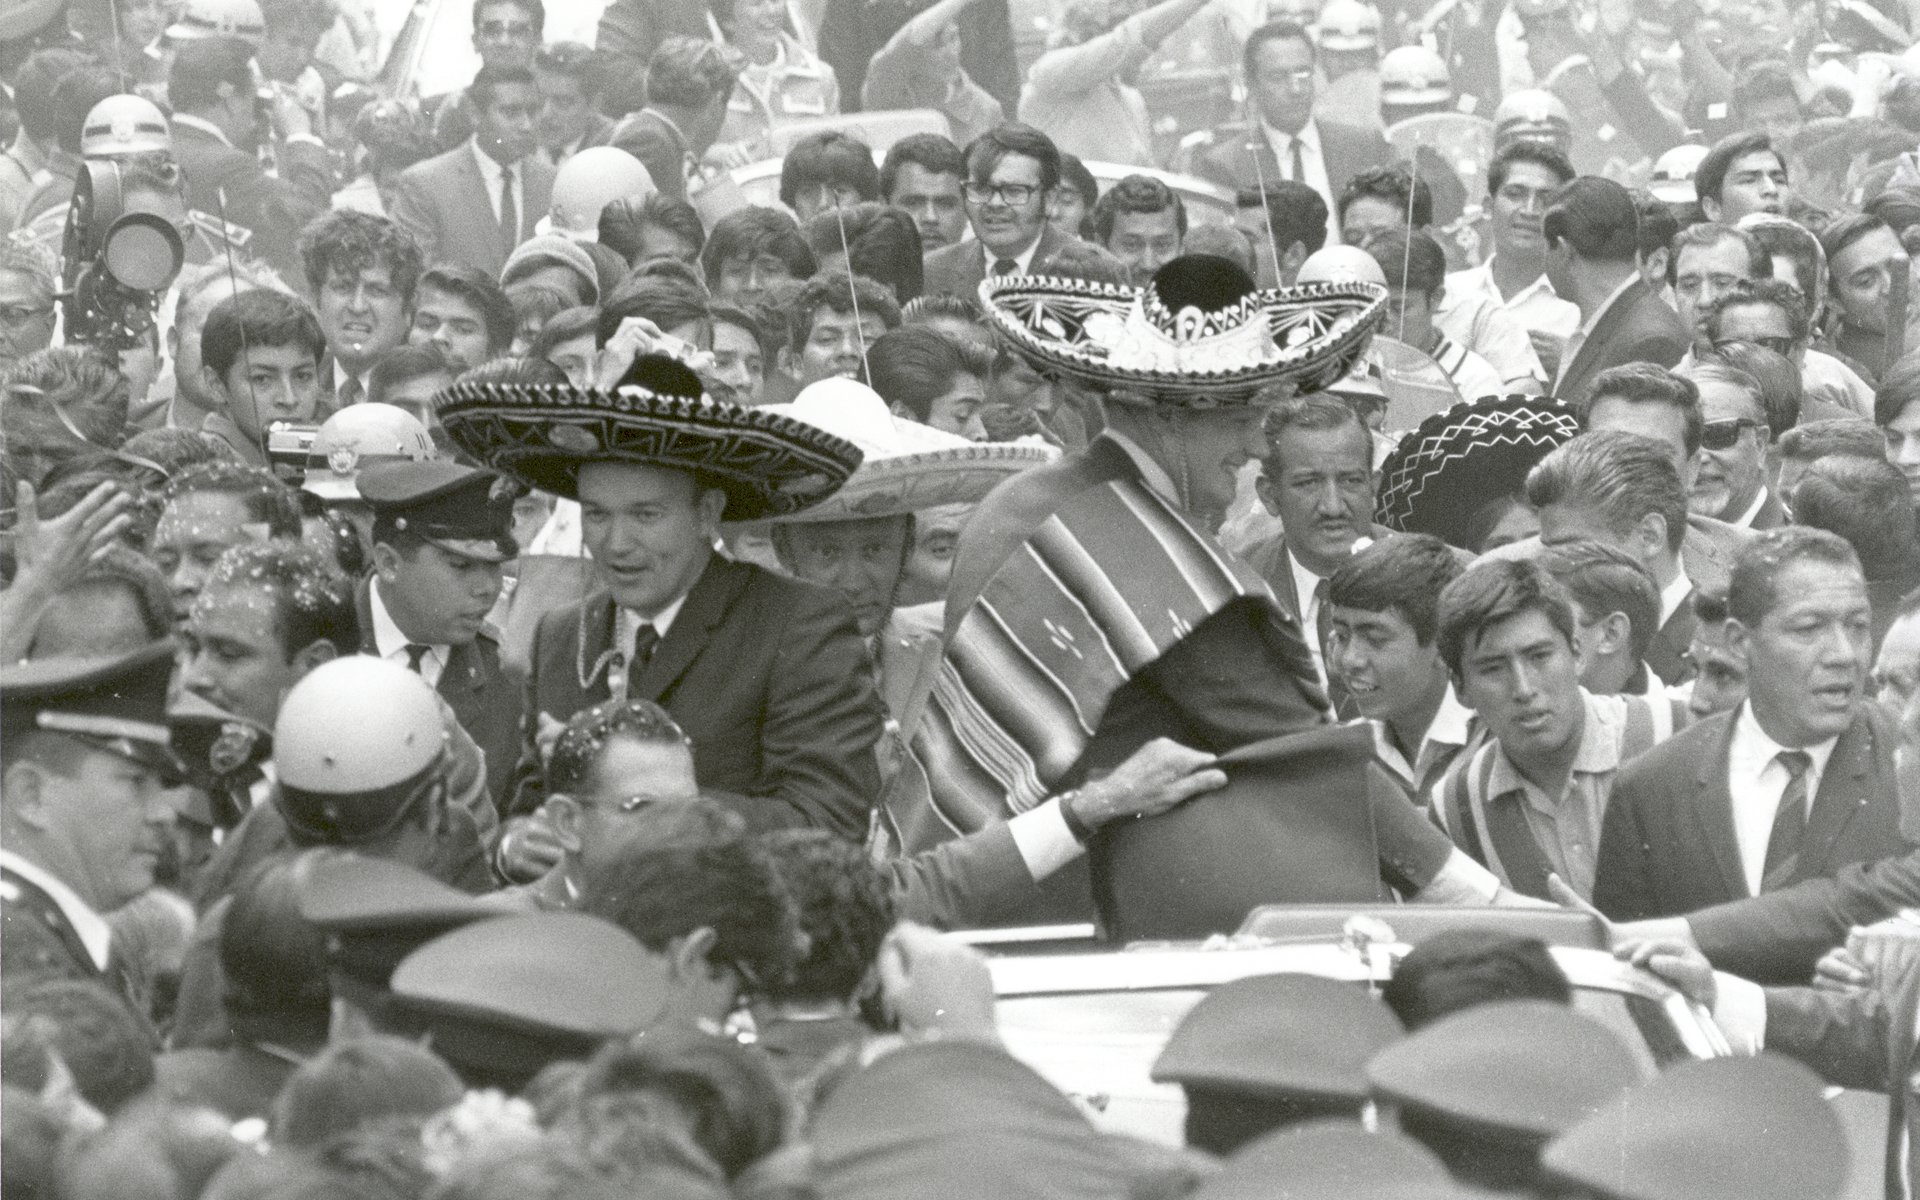 壁纸1920x1200One Giant Leap for Mankind  Apollo 11 Astronauts Swarmed by Thousands In Mexico City Parade 墨西哥城的庆祝游行壁纸 阿波罗11号登月40周年纪念壁纸壁纸 阿波罗11号登月40周年纪念壁纸图片 阿波罗11号登月40周年纪念壁纸素材 人文壁纸 人文图库 人文图片素材桌面壁纸